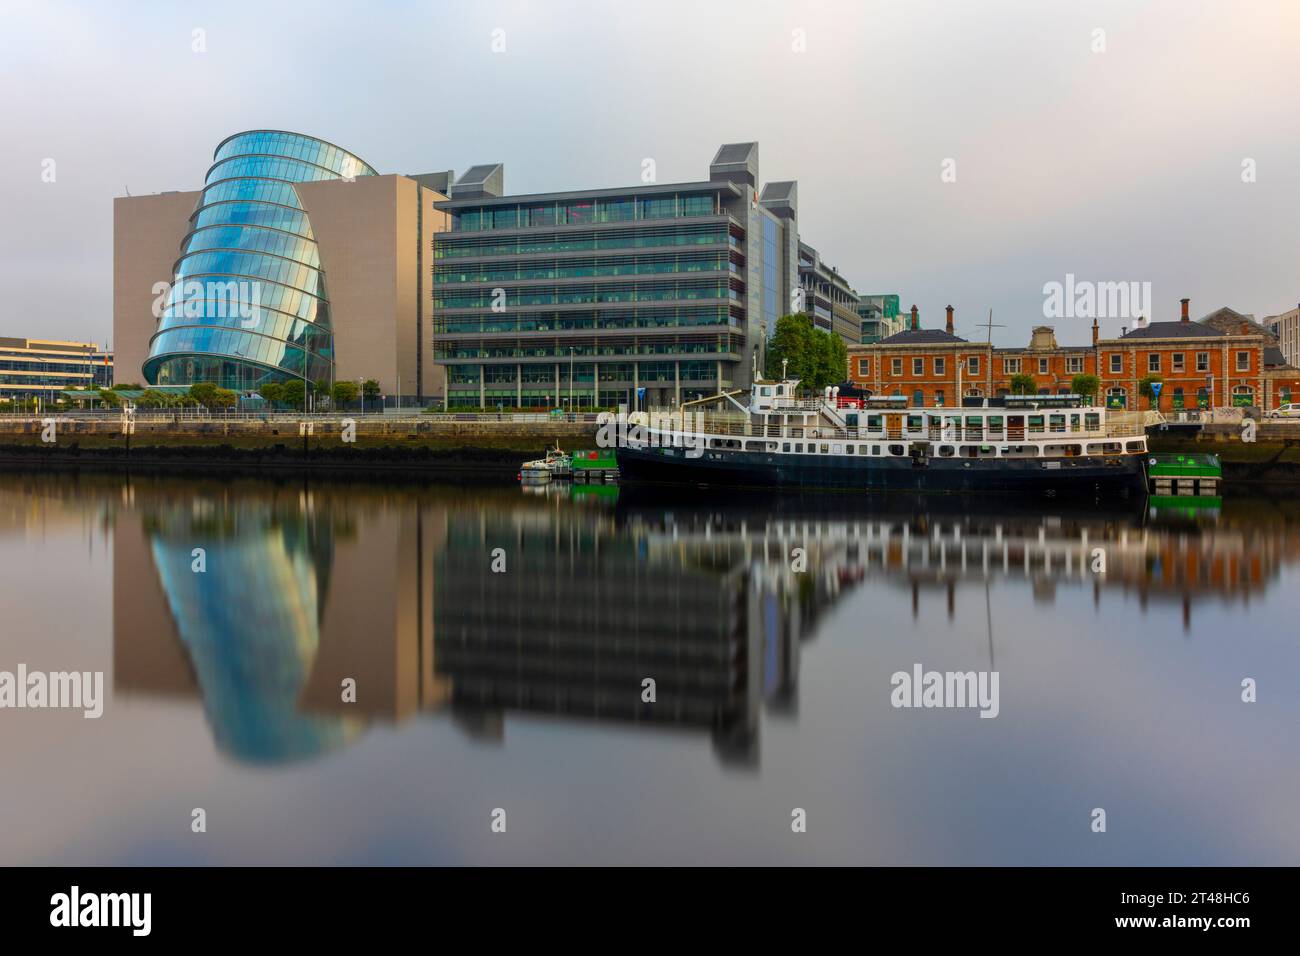 Dublin Docklands è un'area urbana vivace e in rapido sviluppo con architettura moderna e aziende innovative. Foto Stock